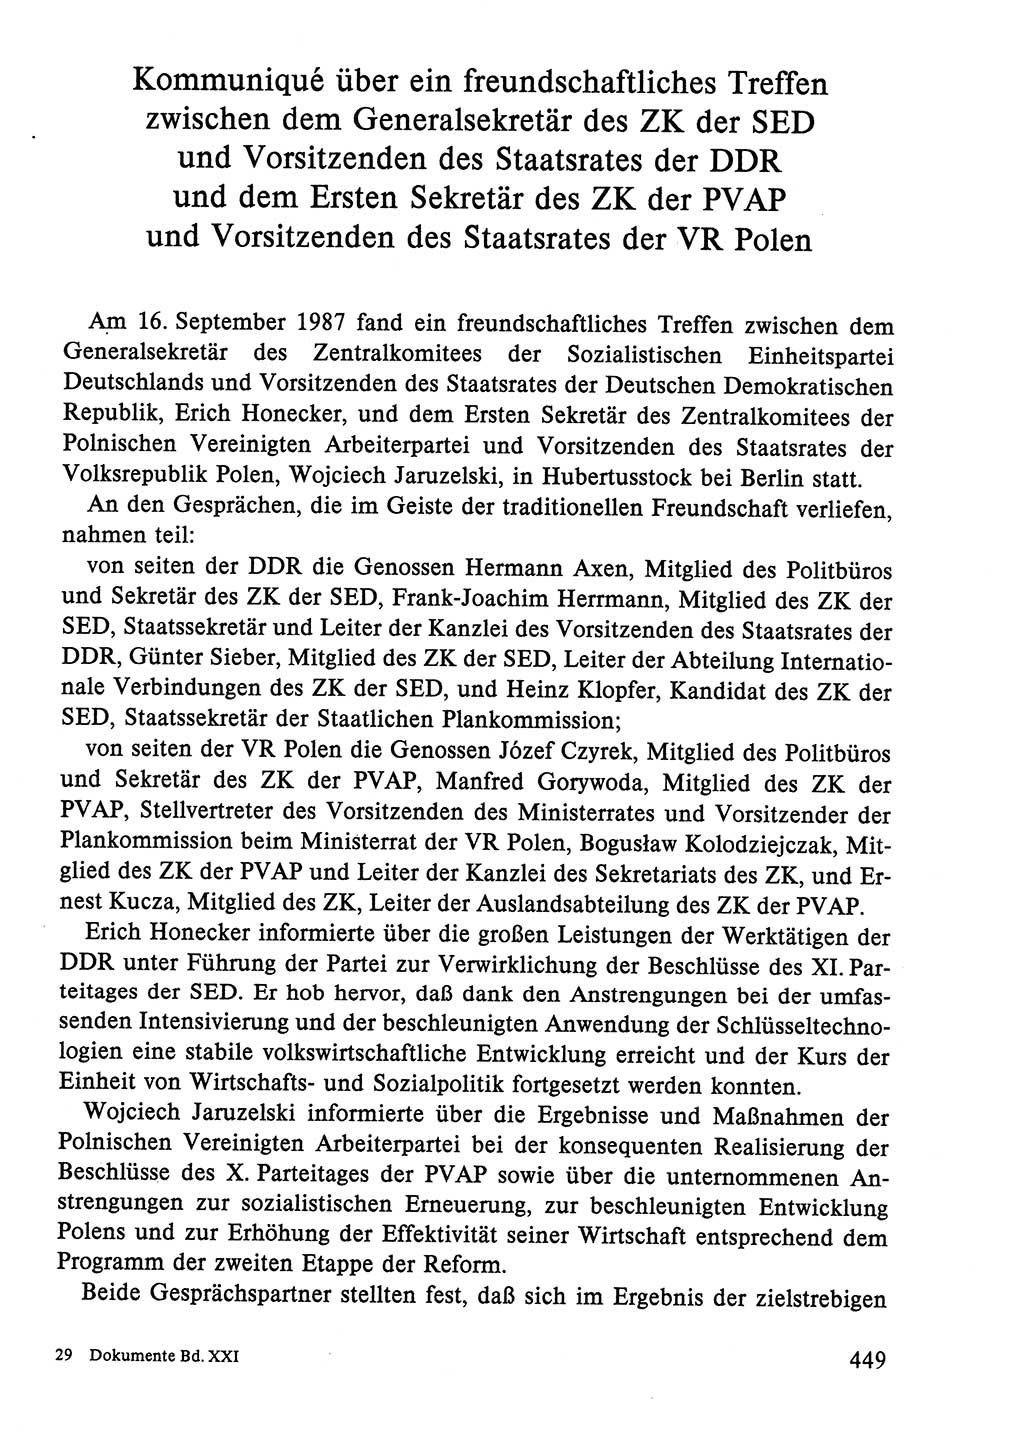 Dokumente der Sozialistischen Einheitspartei Deutschlands (SED) [Deutsche Demokratische Republik (DDR)] 1986-1987, Seite 449 (Dok. SED DDR 1986-1987, S. 449)